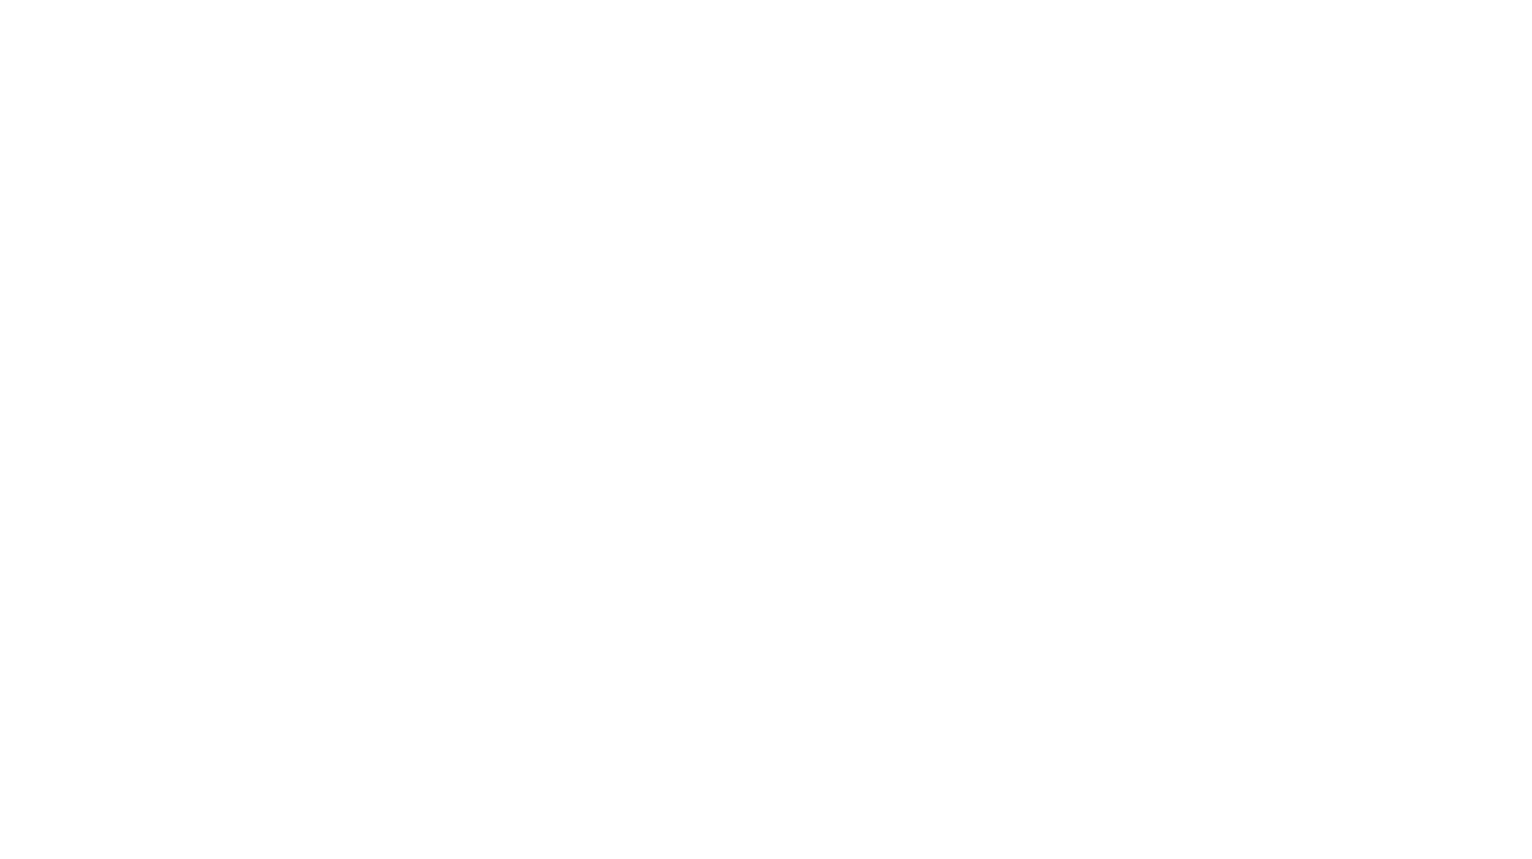 3R Petroleum logo large for dark backgrounds (transparent PNG)